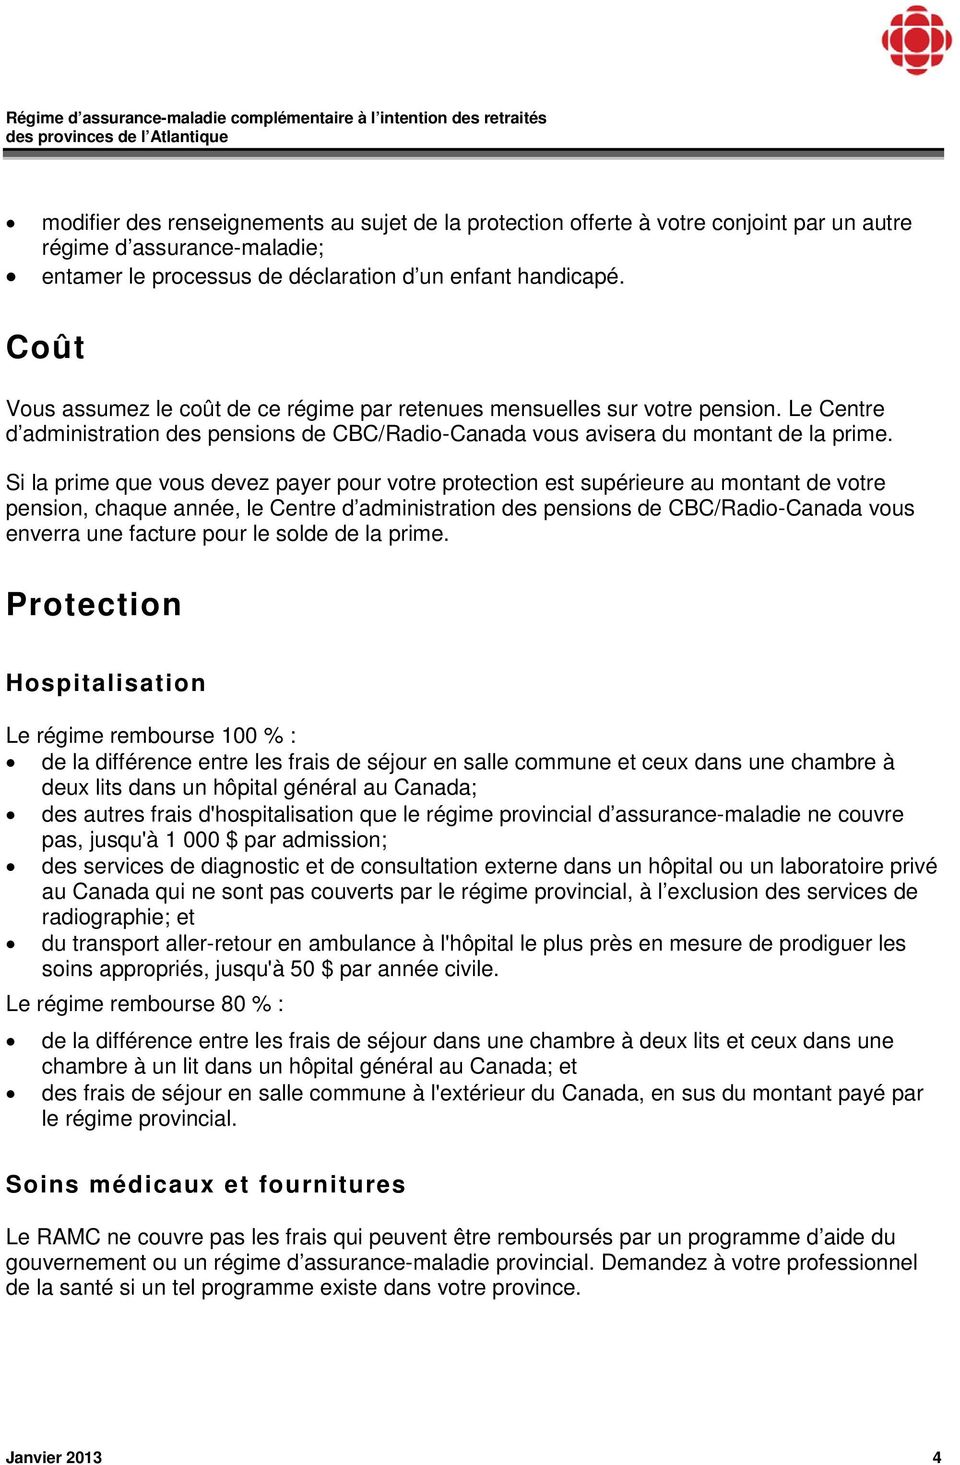 Si la prime que vous devez payer pour votre protection est supérieure au montant de votre pension, chaque année, le Centre d administration des pensions de CBC/Radio-Canada vous enverra une facture